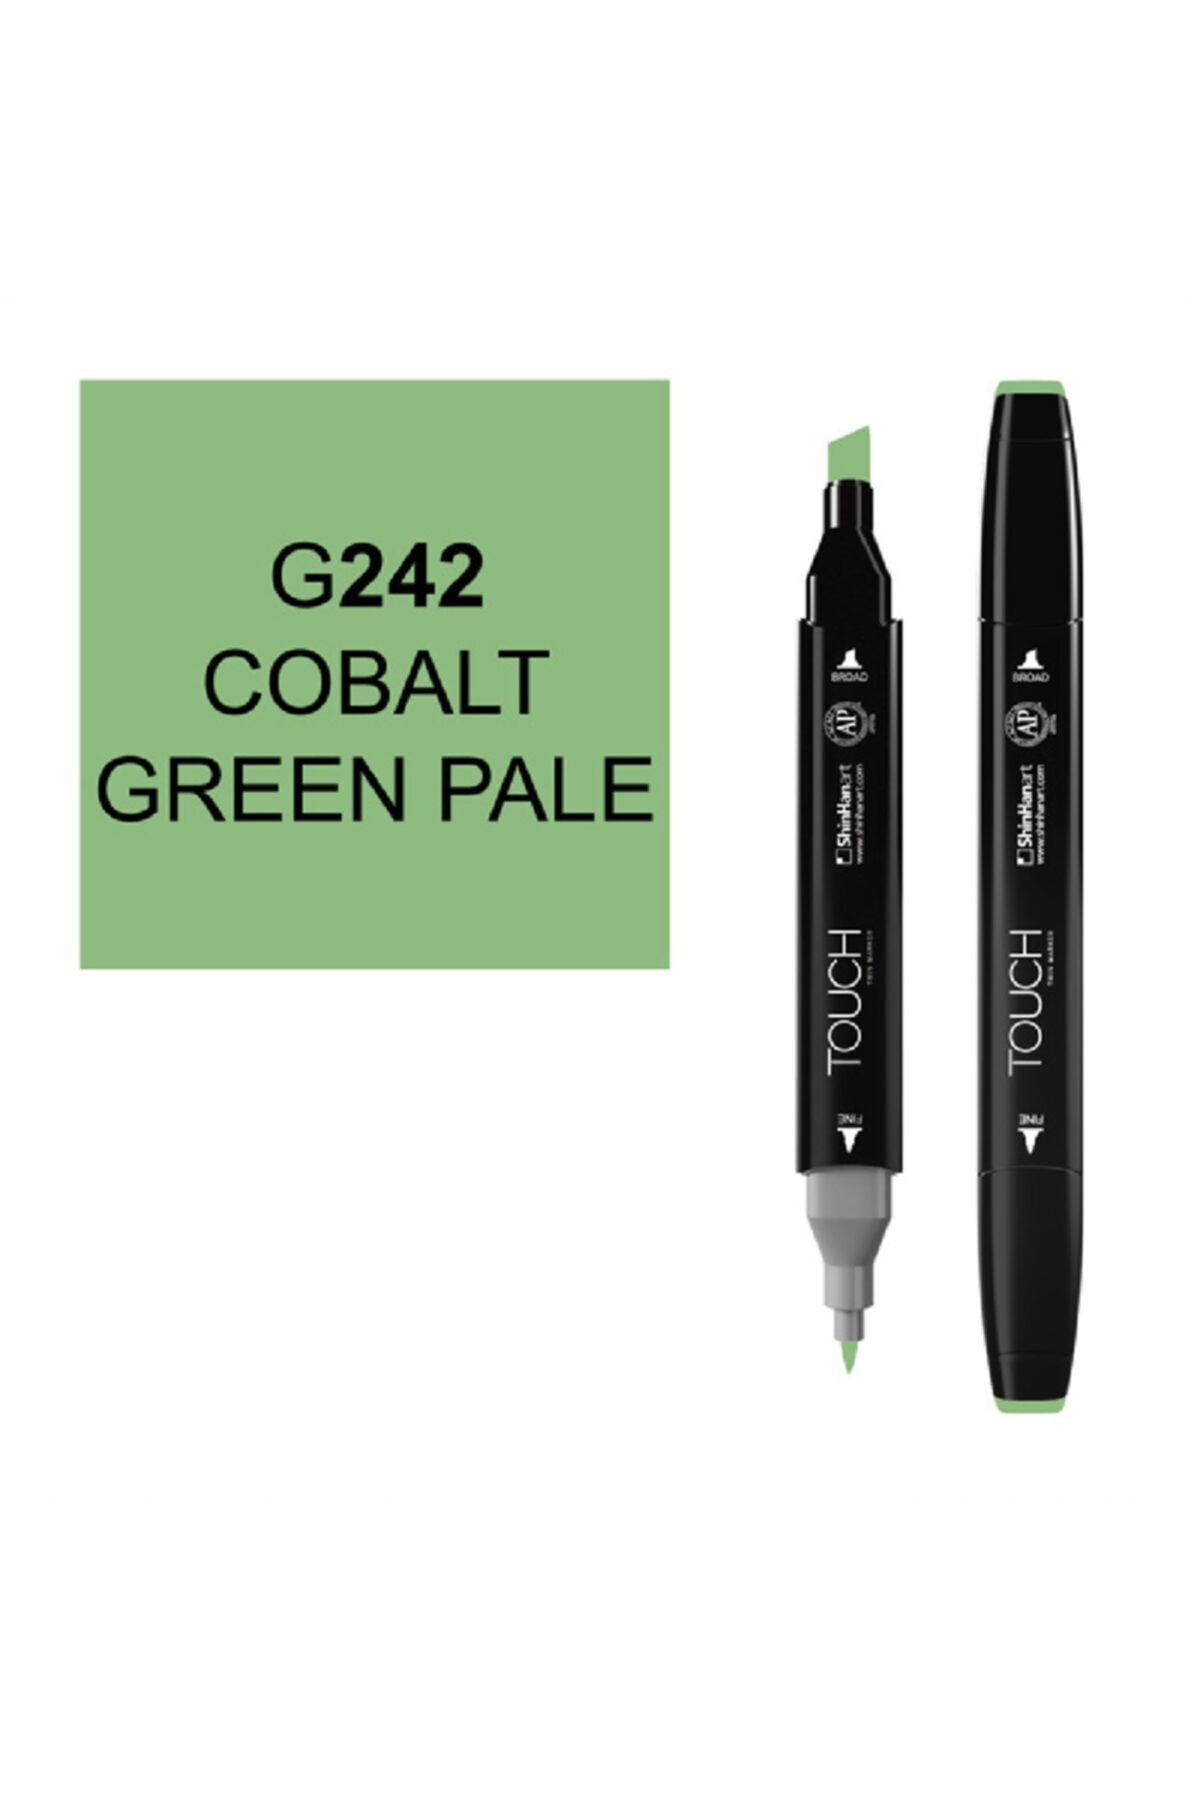 Ponart Touch Twin G242 Cobalt Green Pale Marker Sh1110242